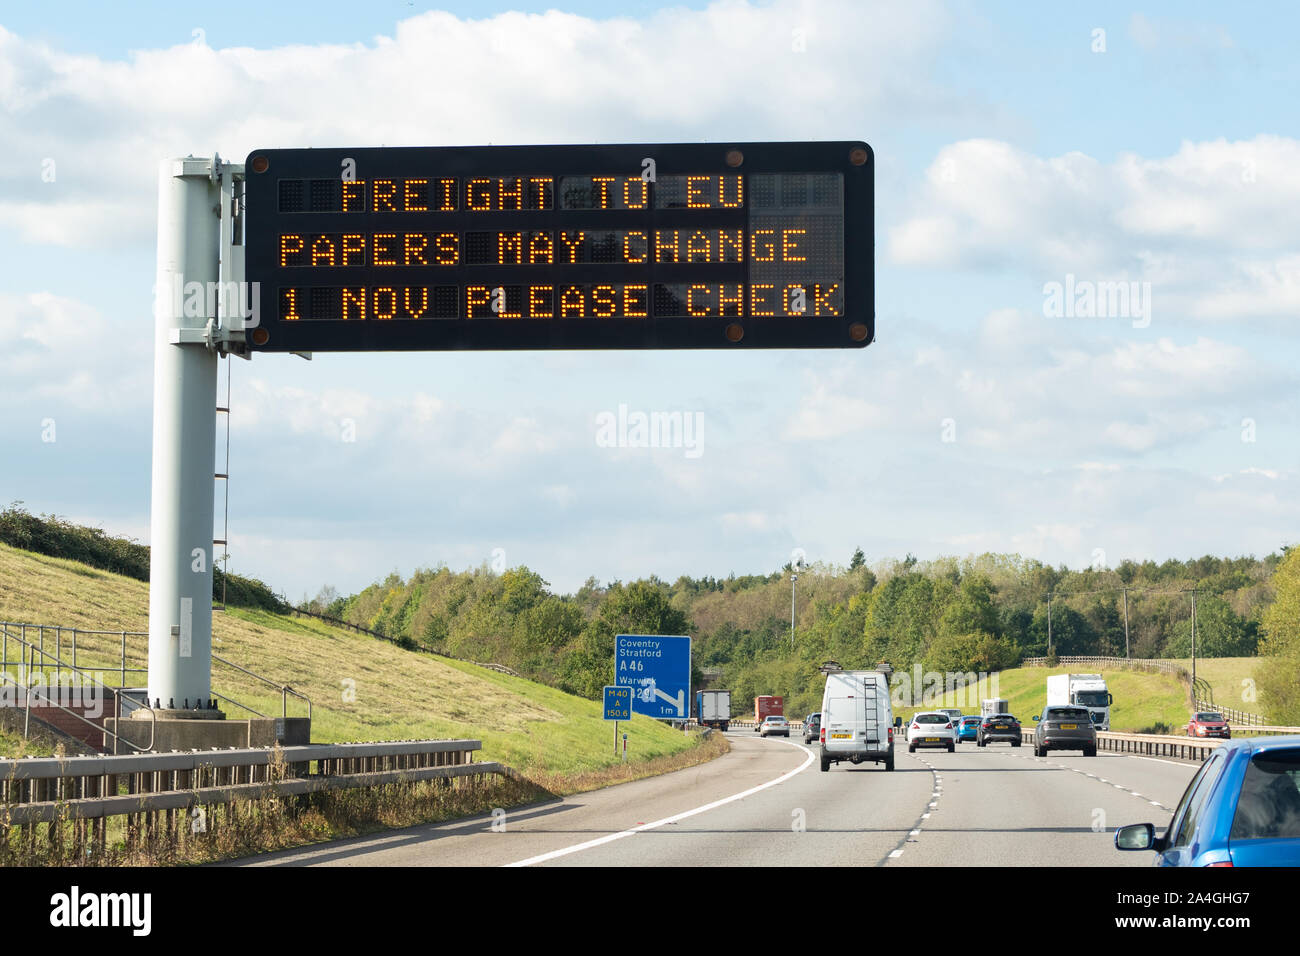 Brexit Préparation - informations sur l'autoroute la matrix sign - 'Le transport jusqu'aux documents de l'UE peut changer 1 Nov veuillez vérifier' - M40 près de Coventry, England, UK Banque D'Images